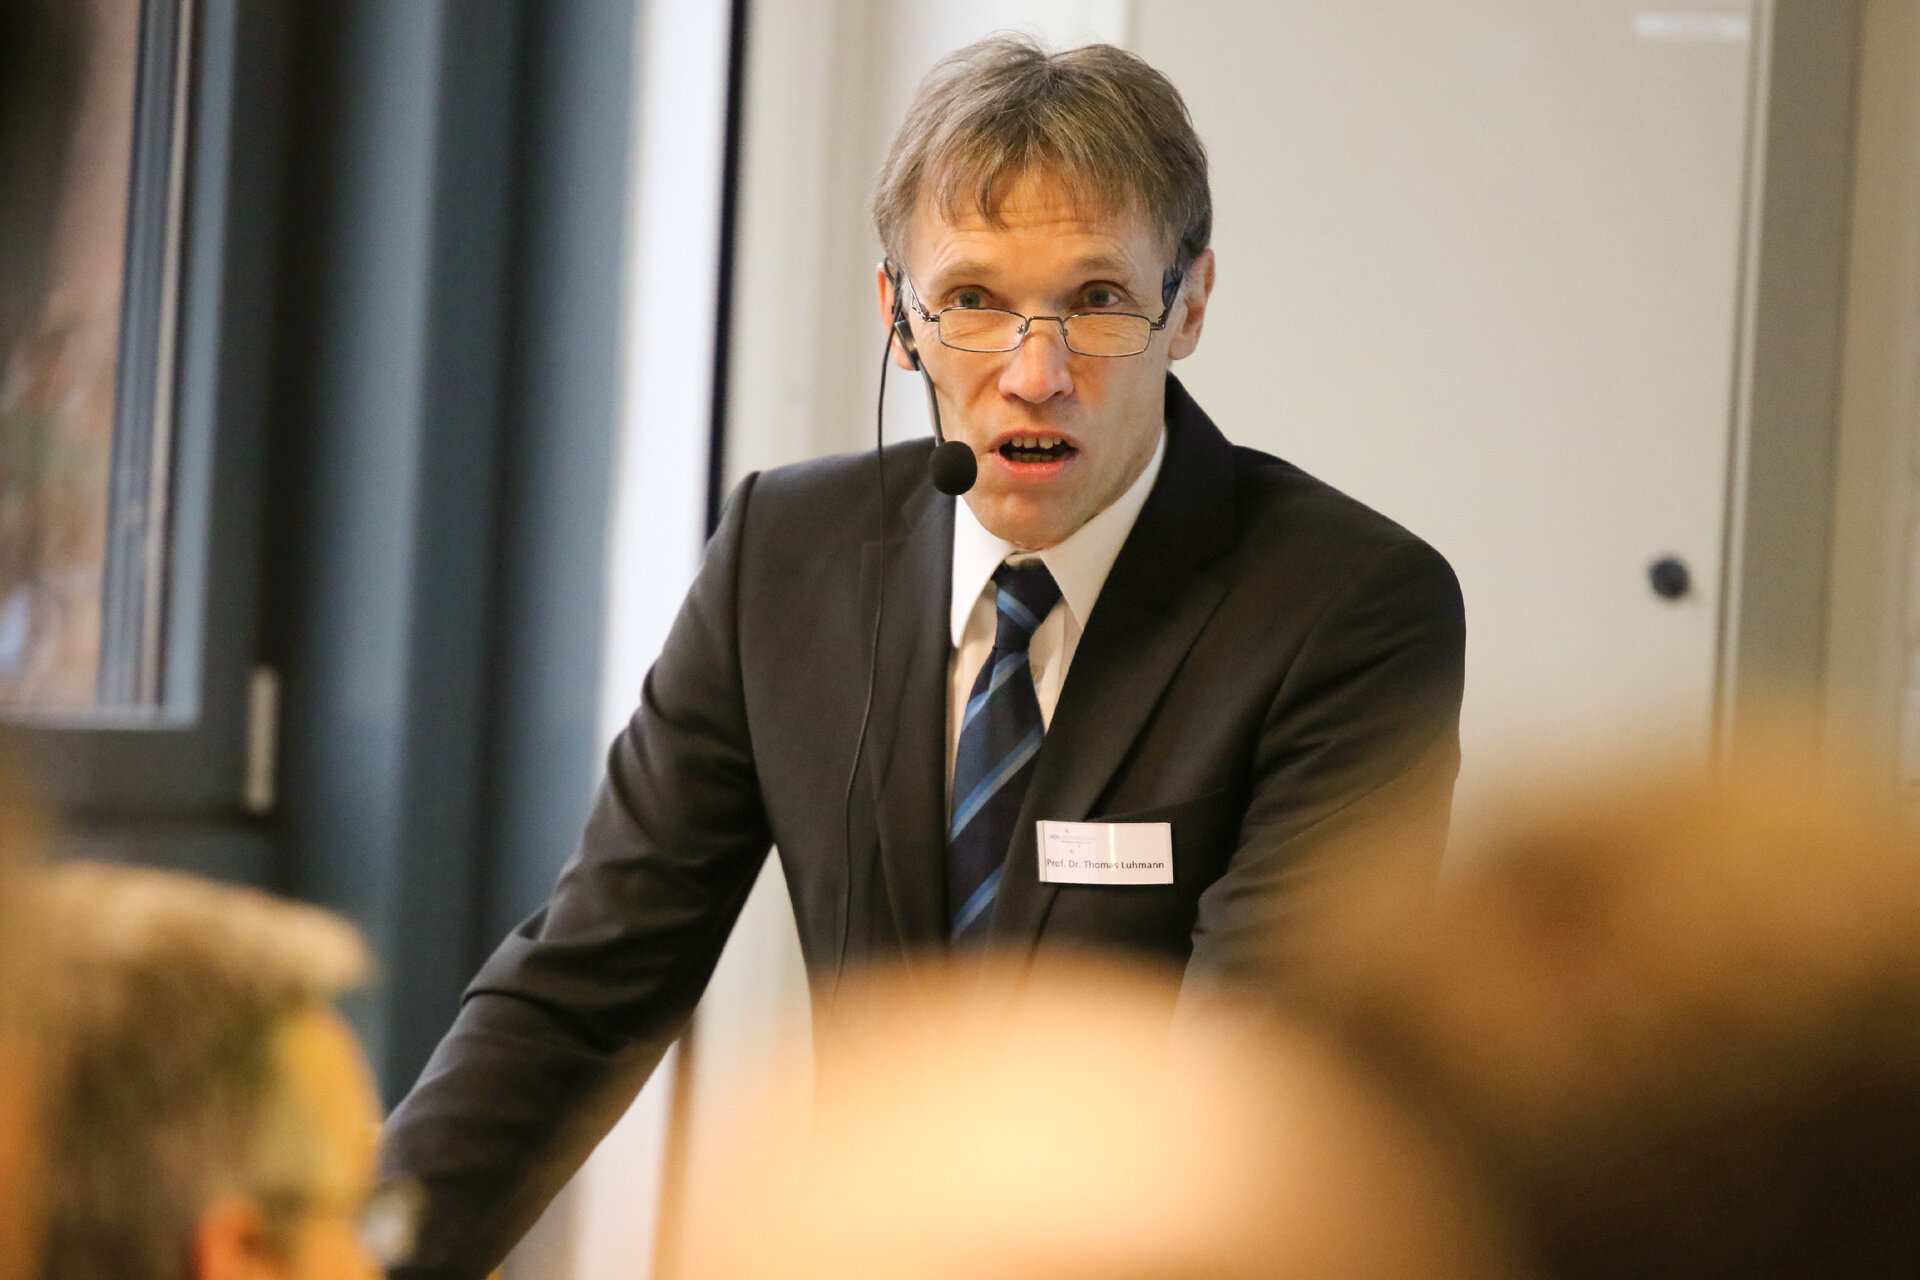 Prof. Dr. Thomas Luhmann, Leiter des Instituts für angewandte Photogrammetrie und Geoinformatik (IAPG)